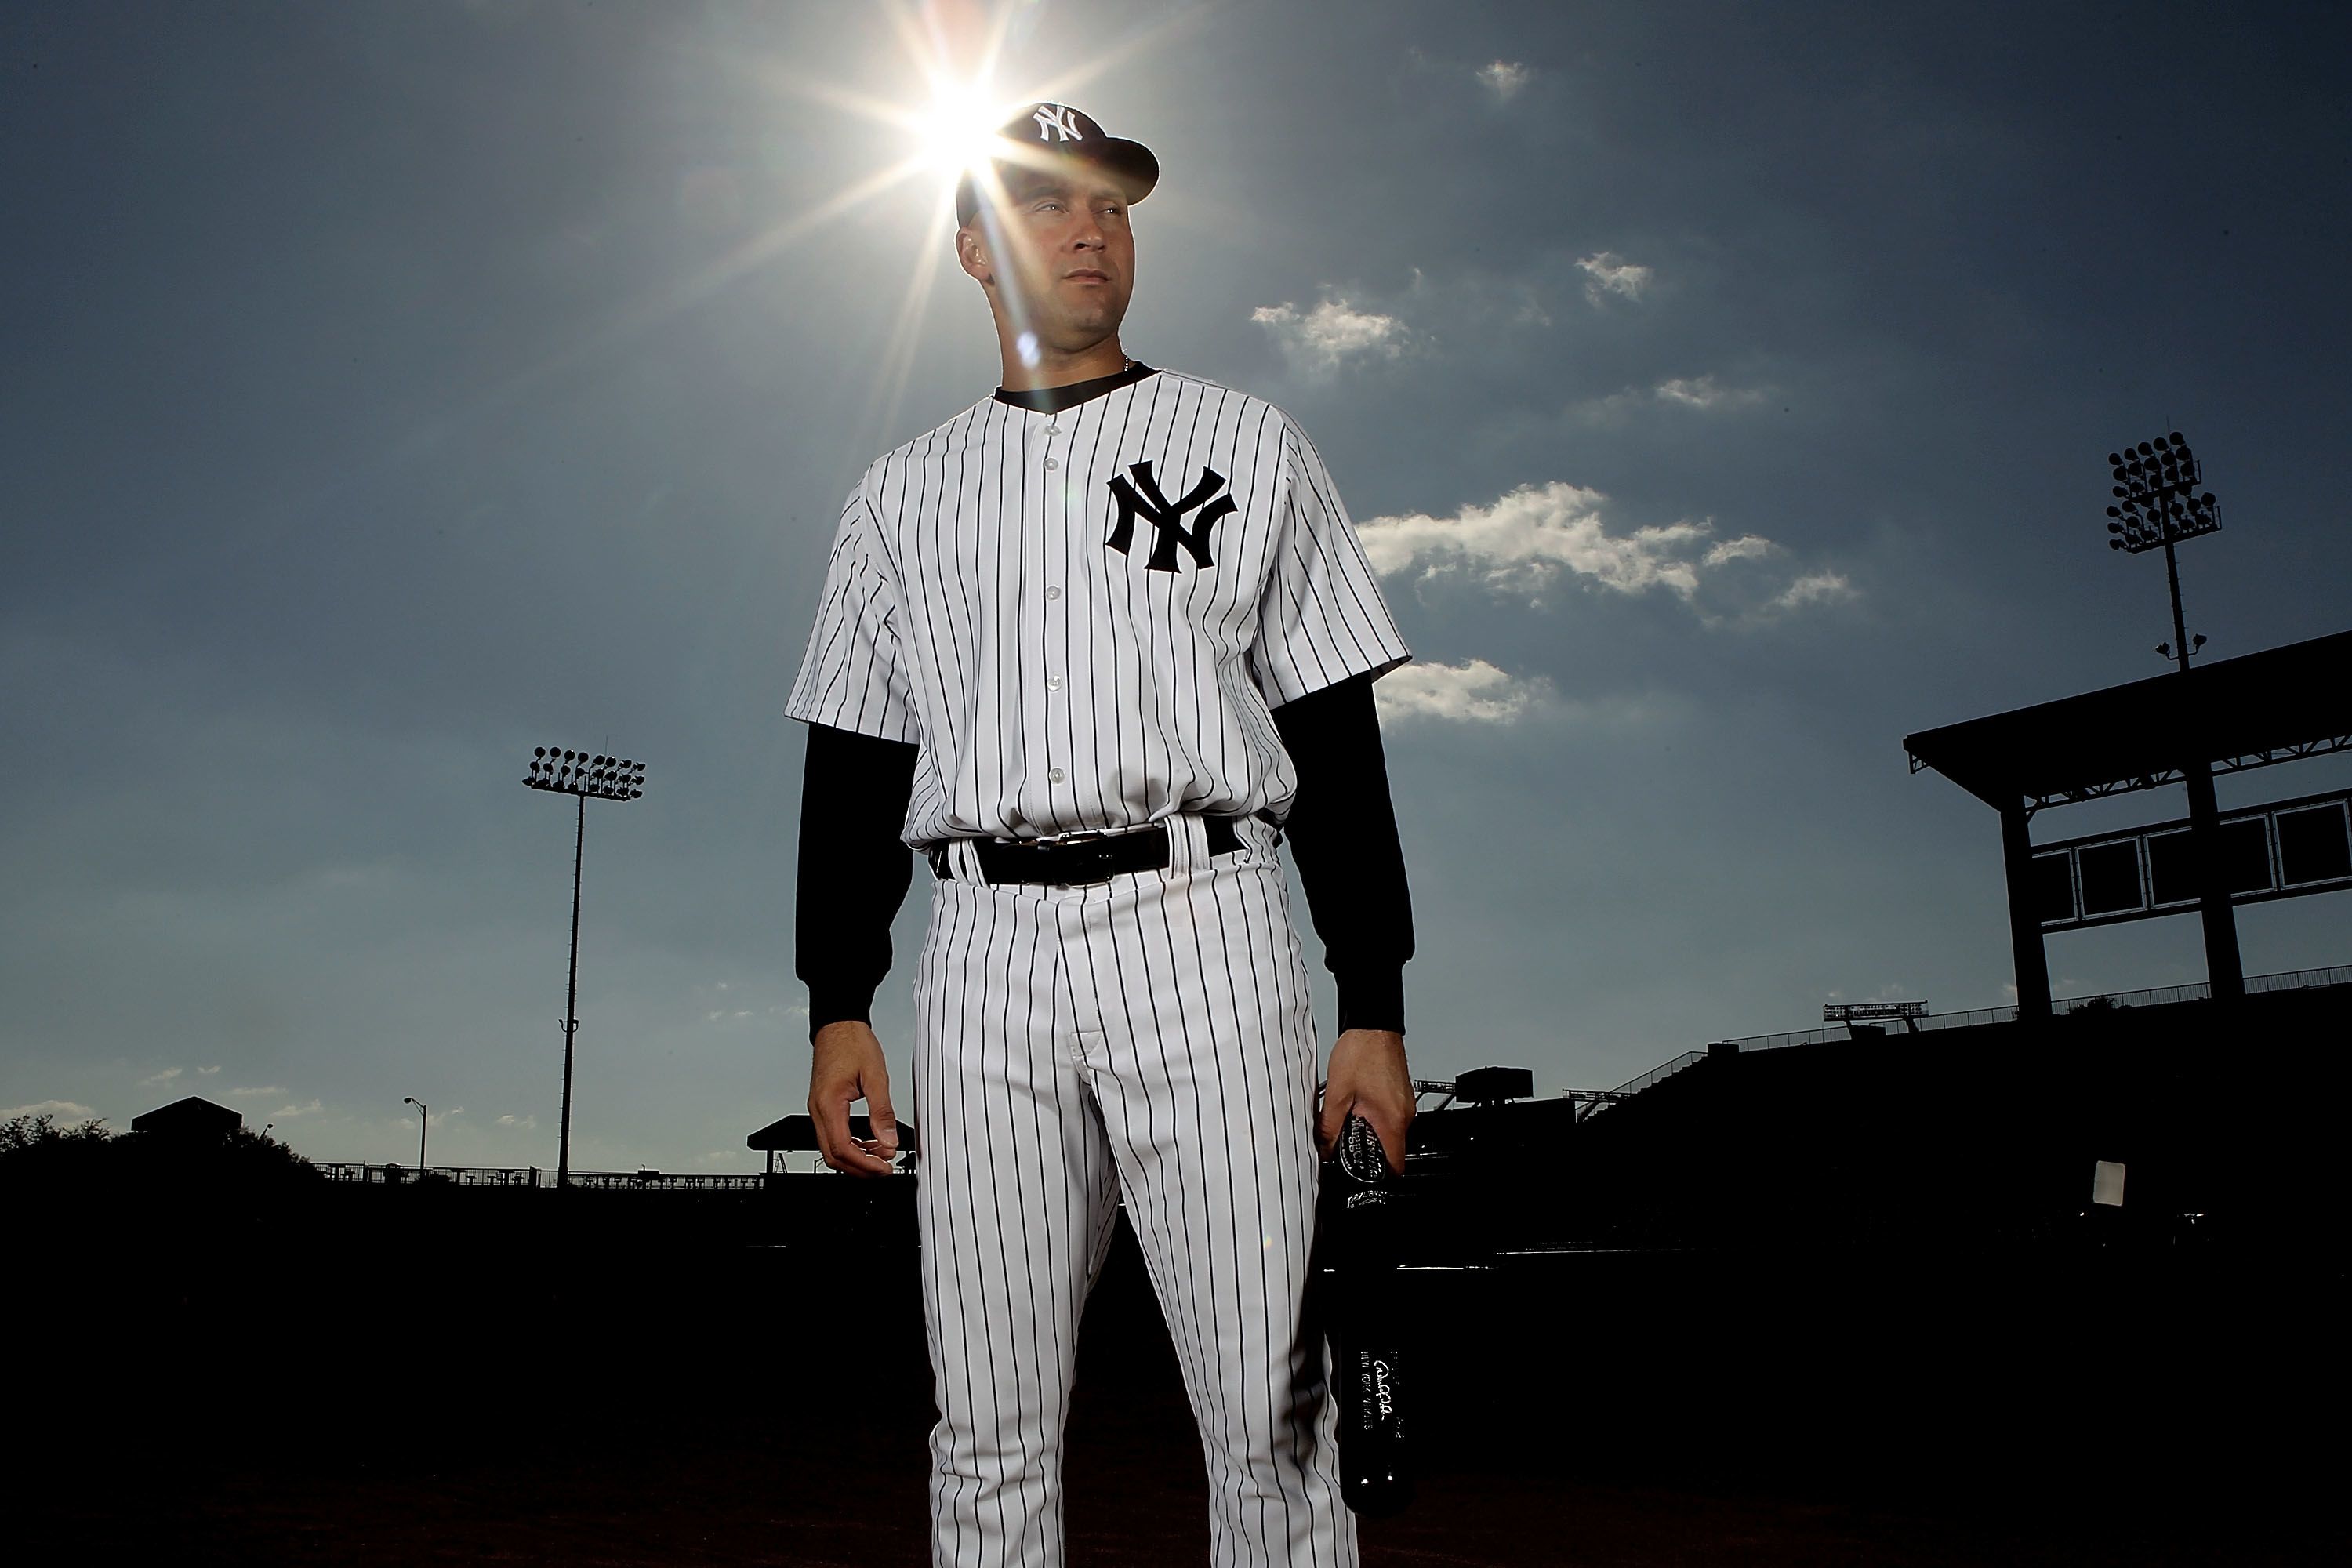 Yankee shortstop Derek Jeter most expensive memorabilia